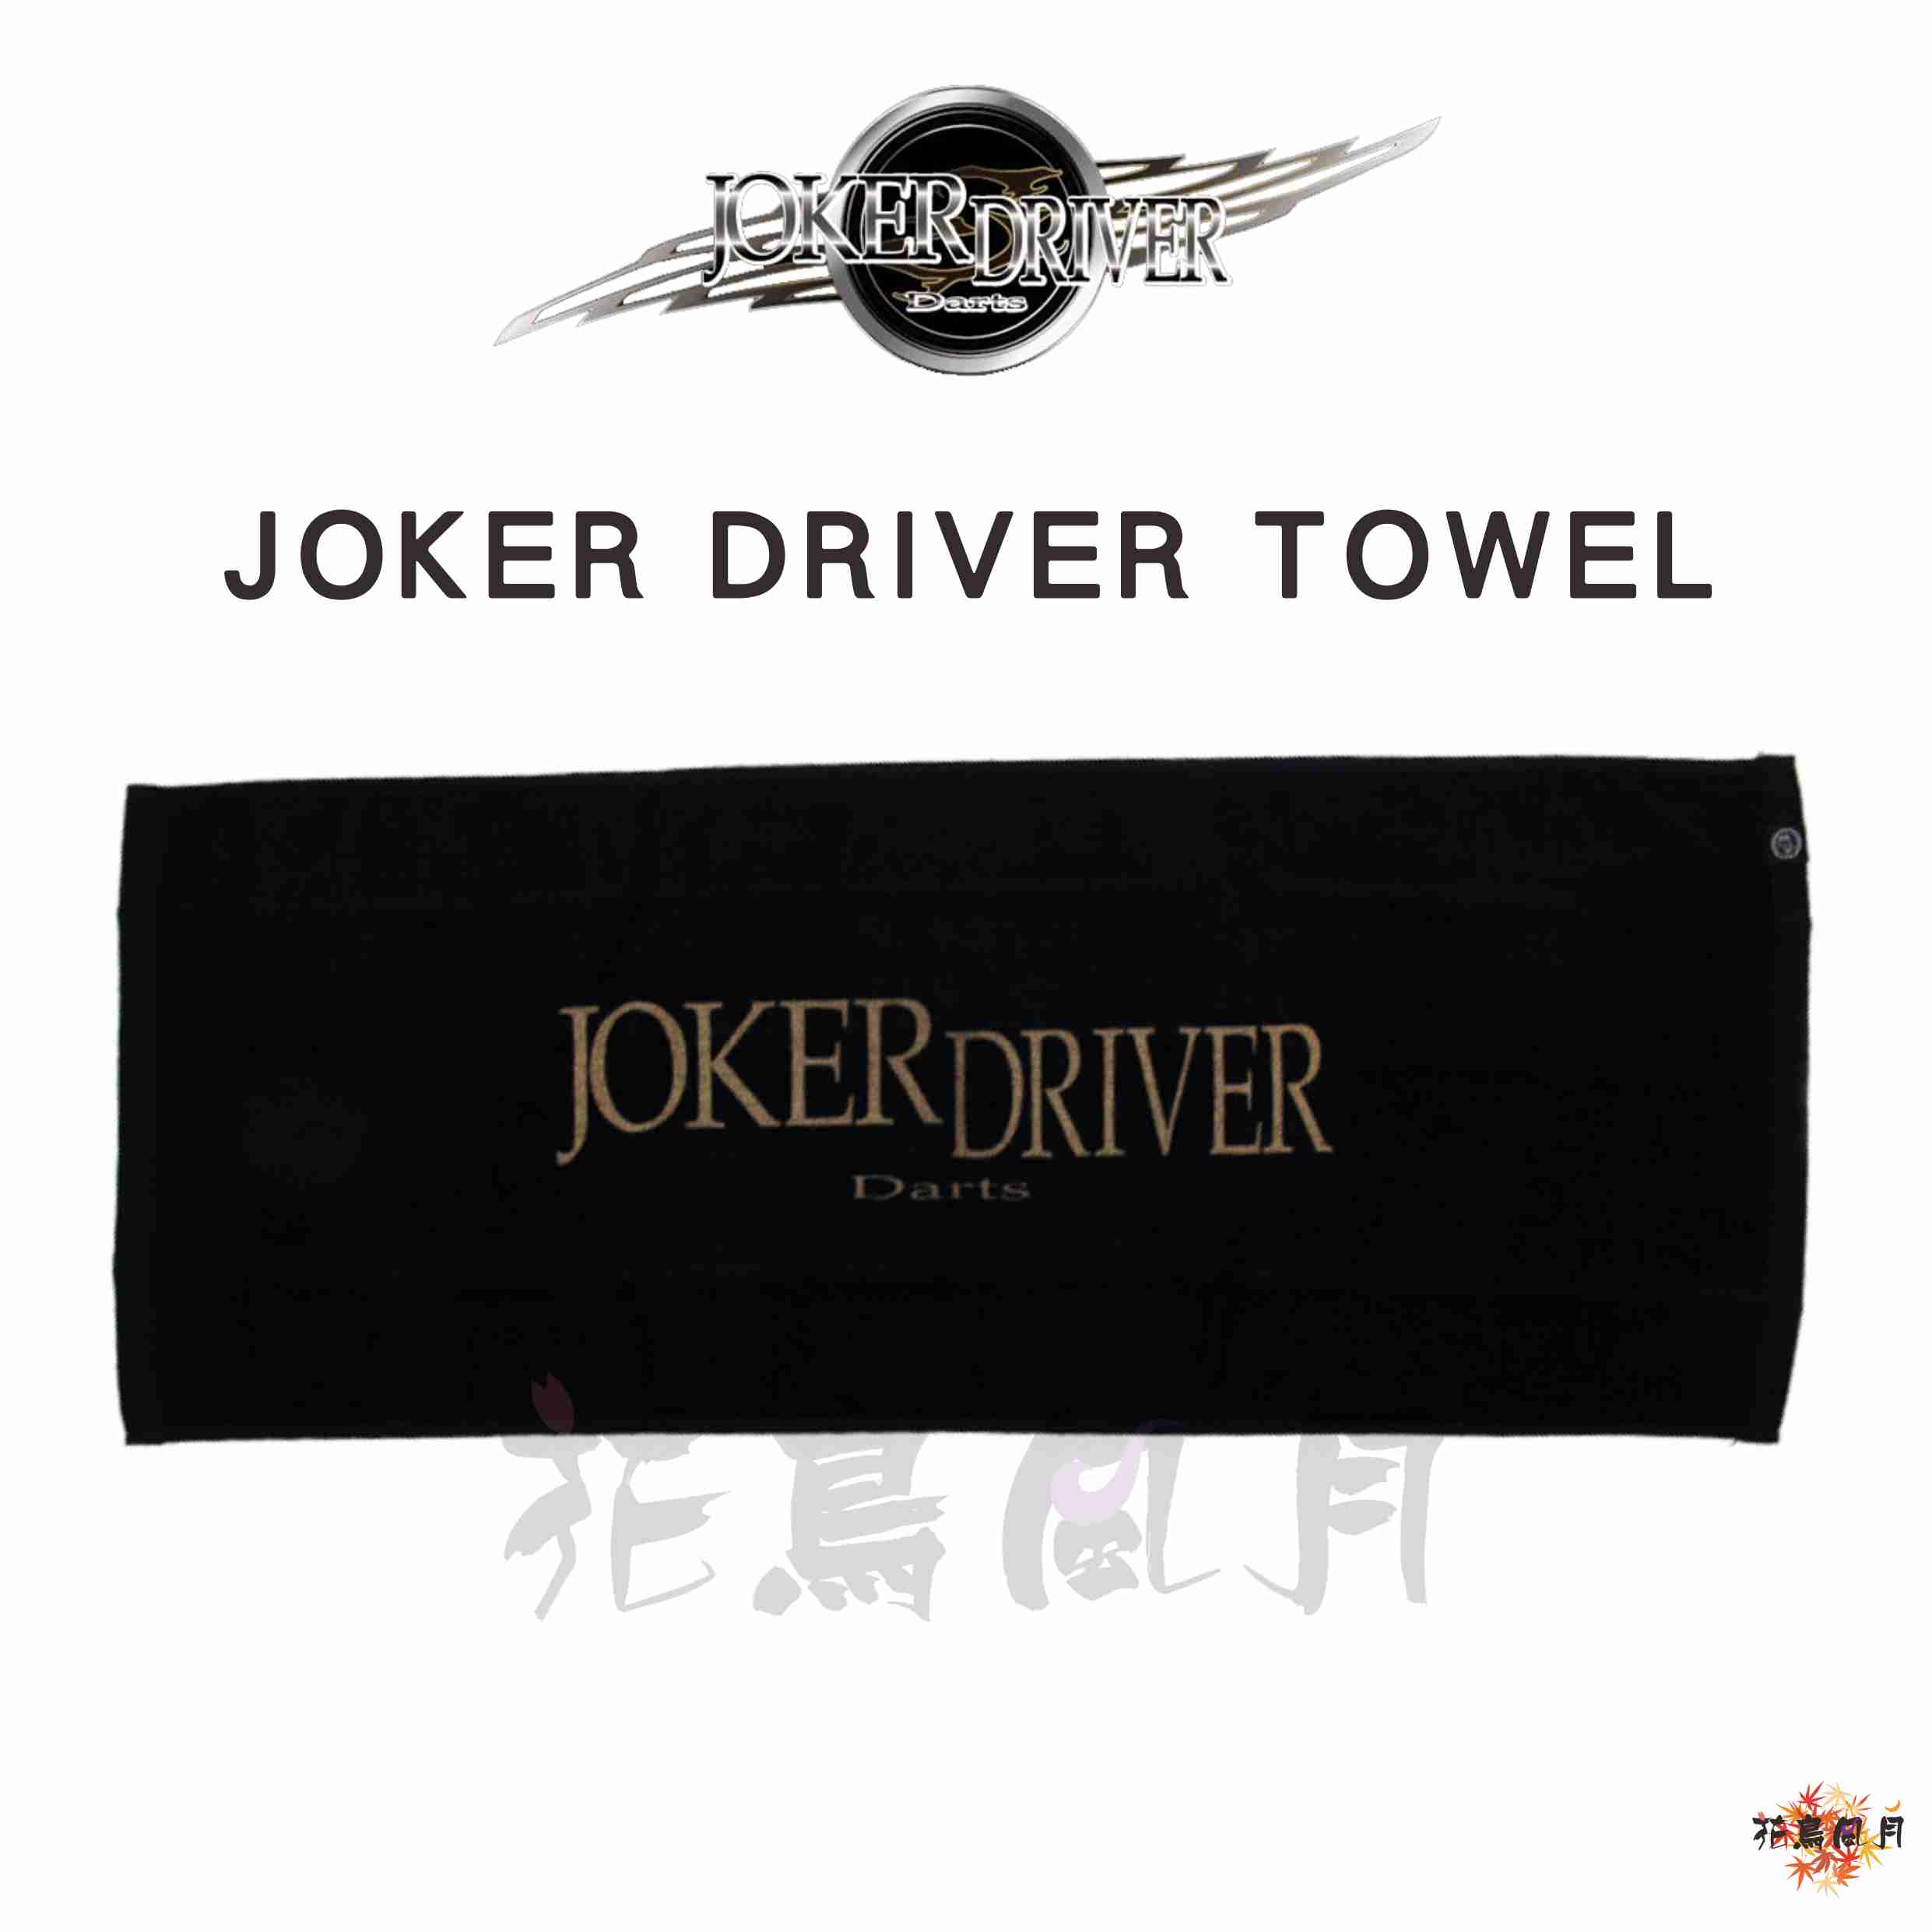 JOKERDRIVER-TOWEL